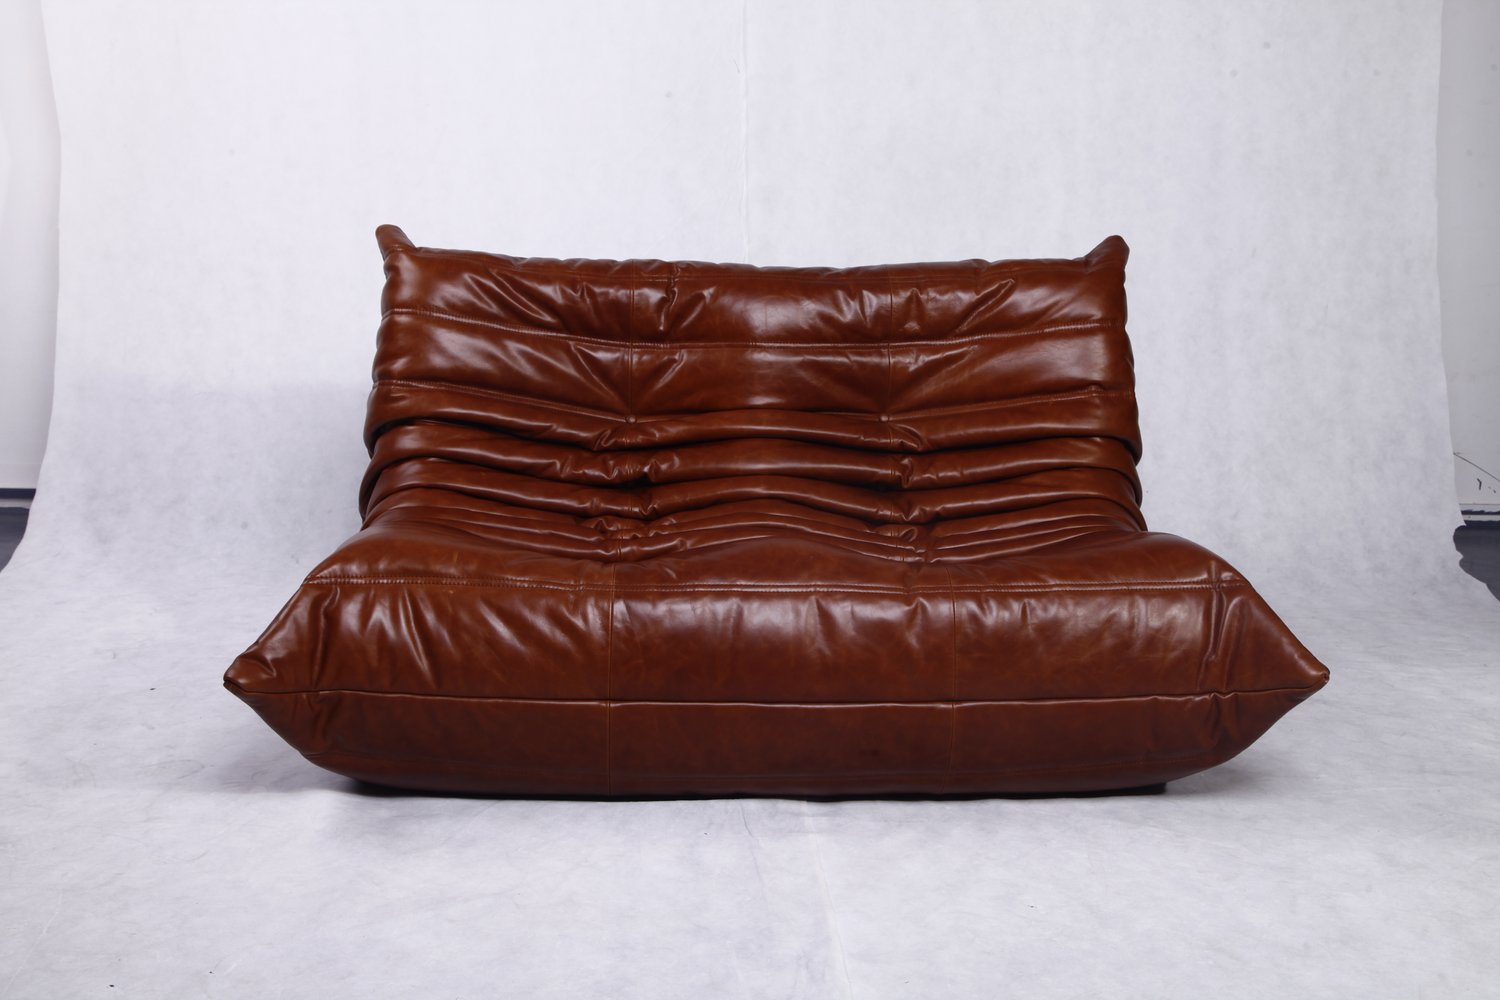 Togo Sofa Replica Worldwide Delivery